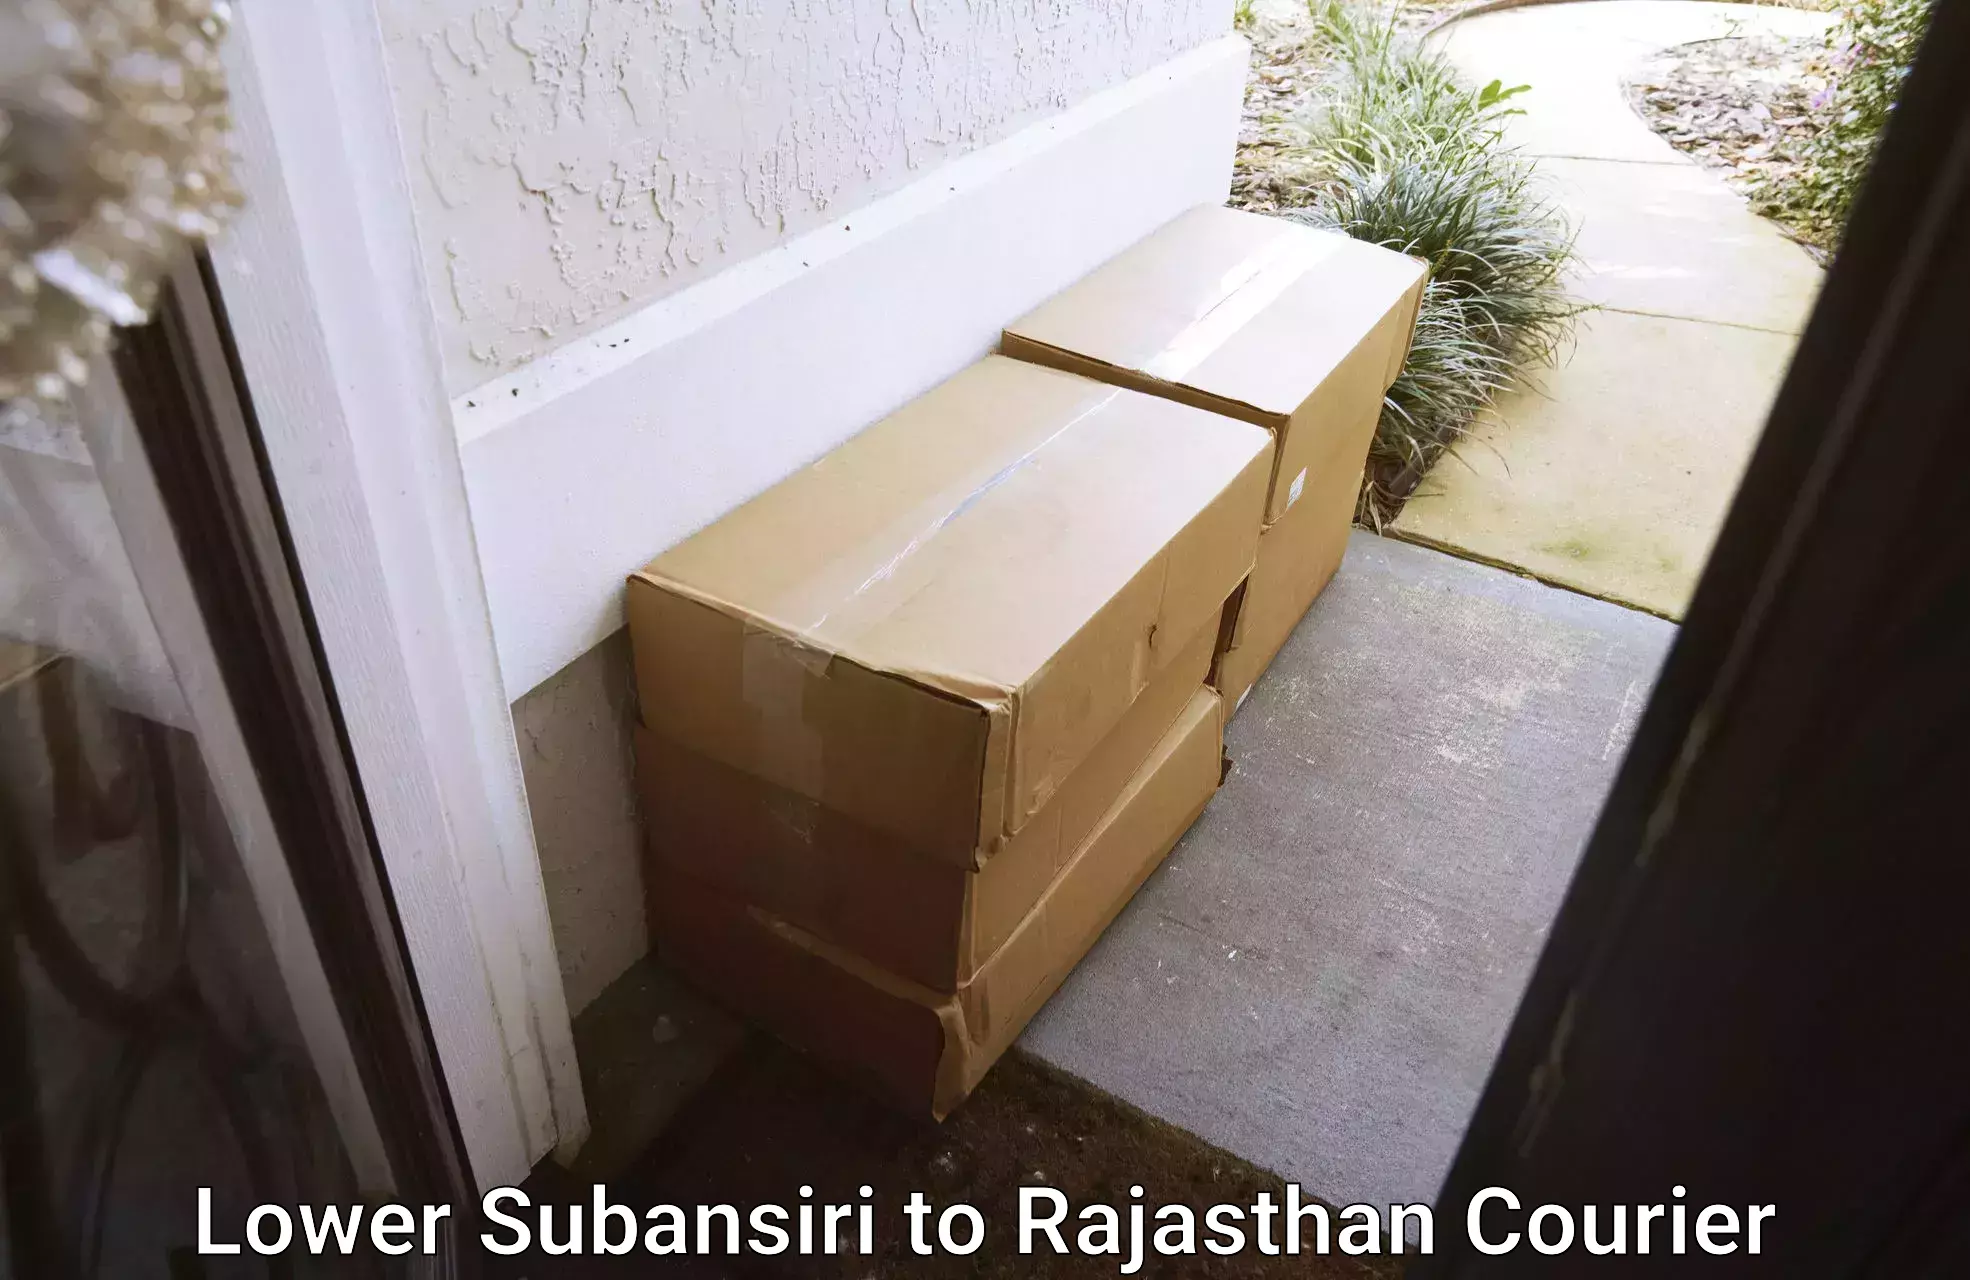 High-priority parcel service Lower Subansiri to Banswara